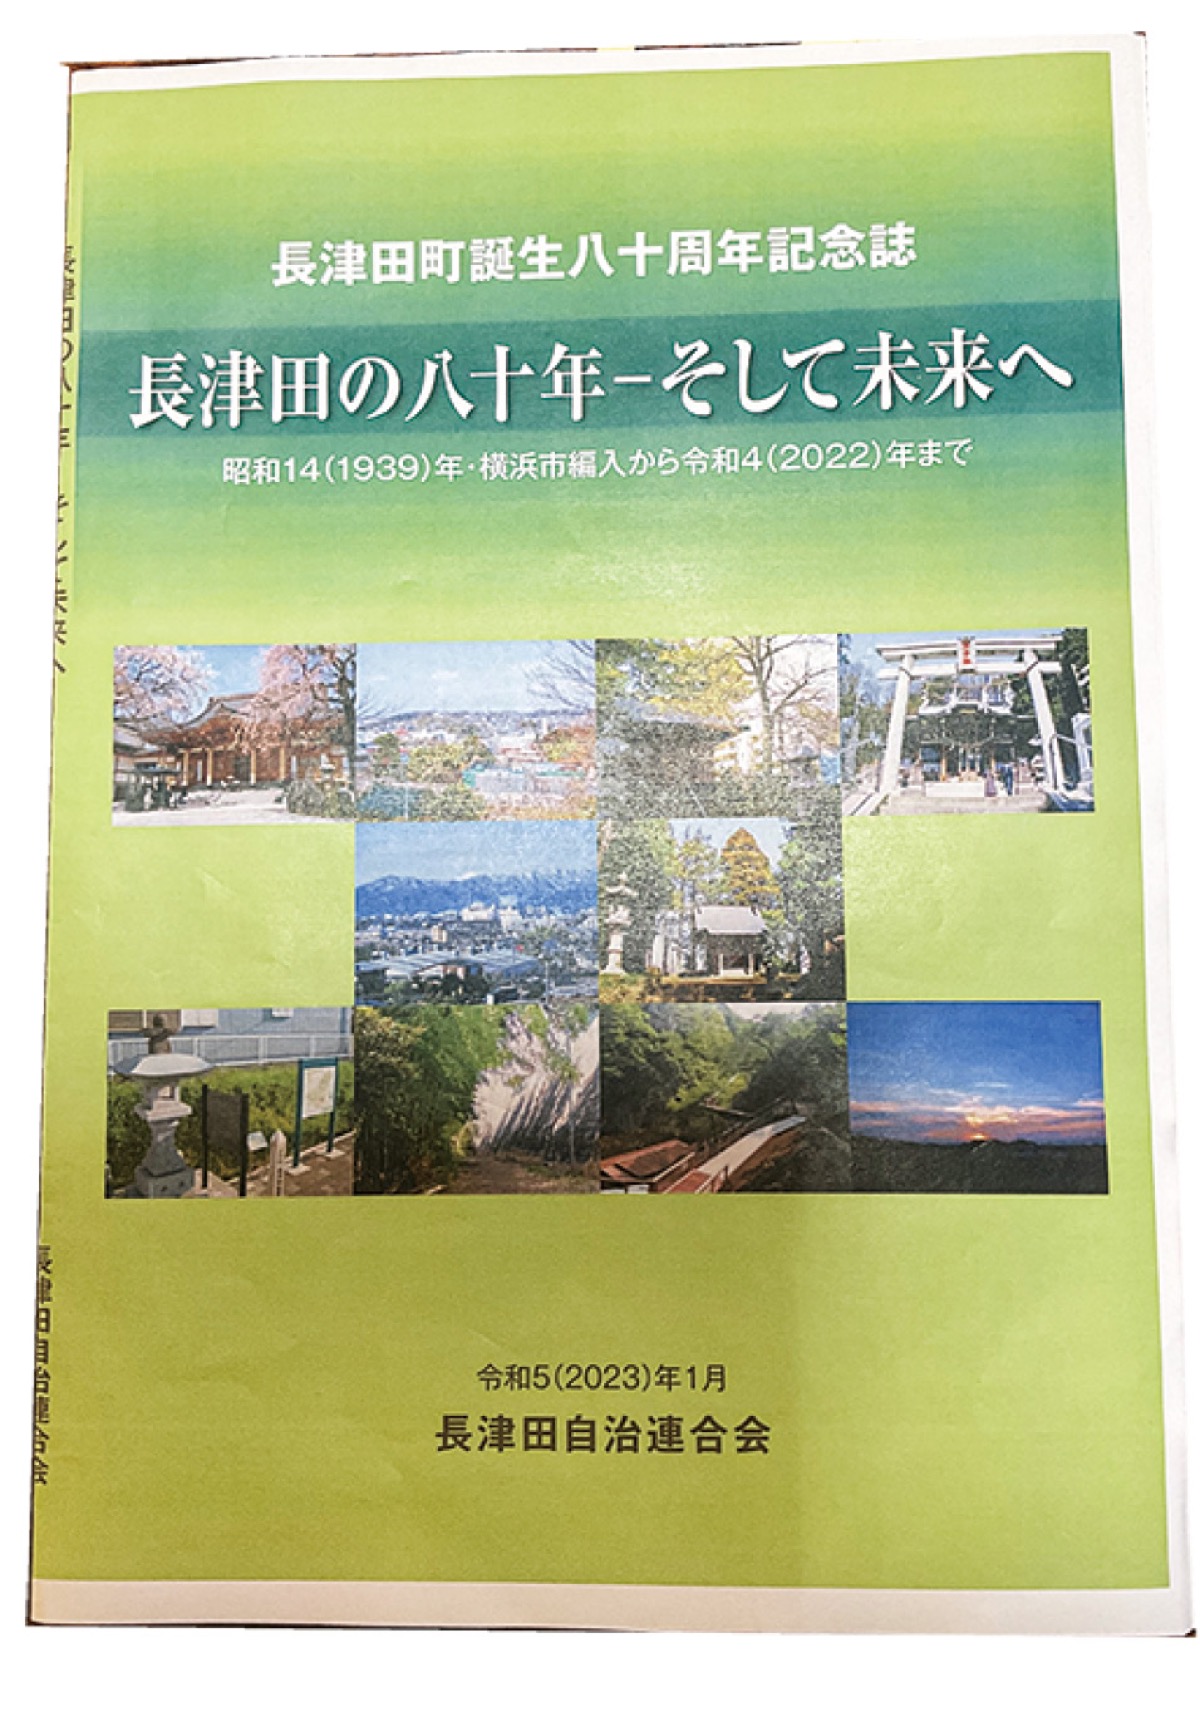 長津田自治連合会 八十周年記念誌 刊行へ 「住民らの協力に感謝」 | 緑